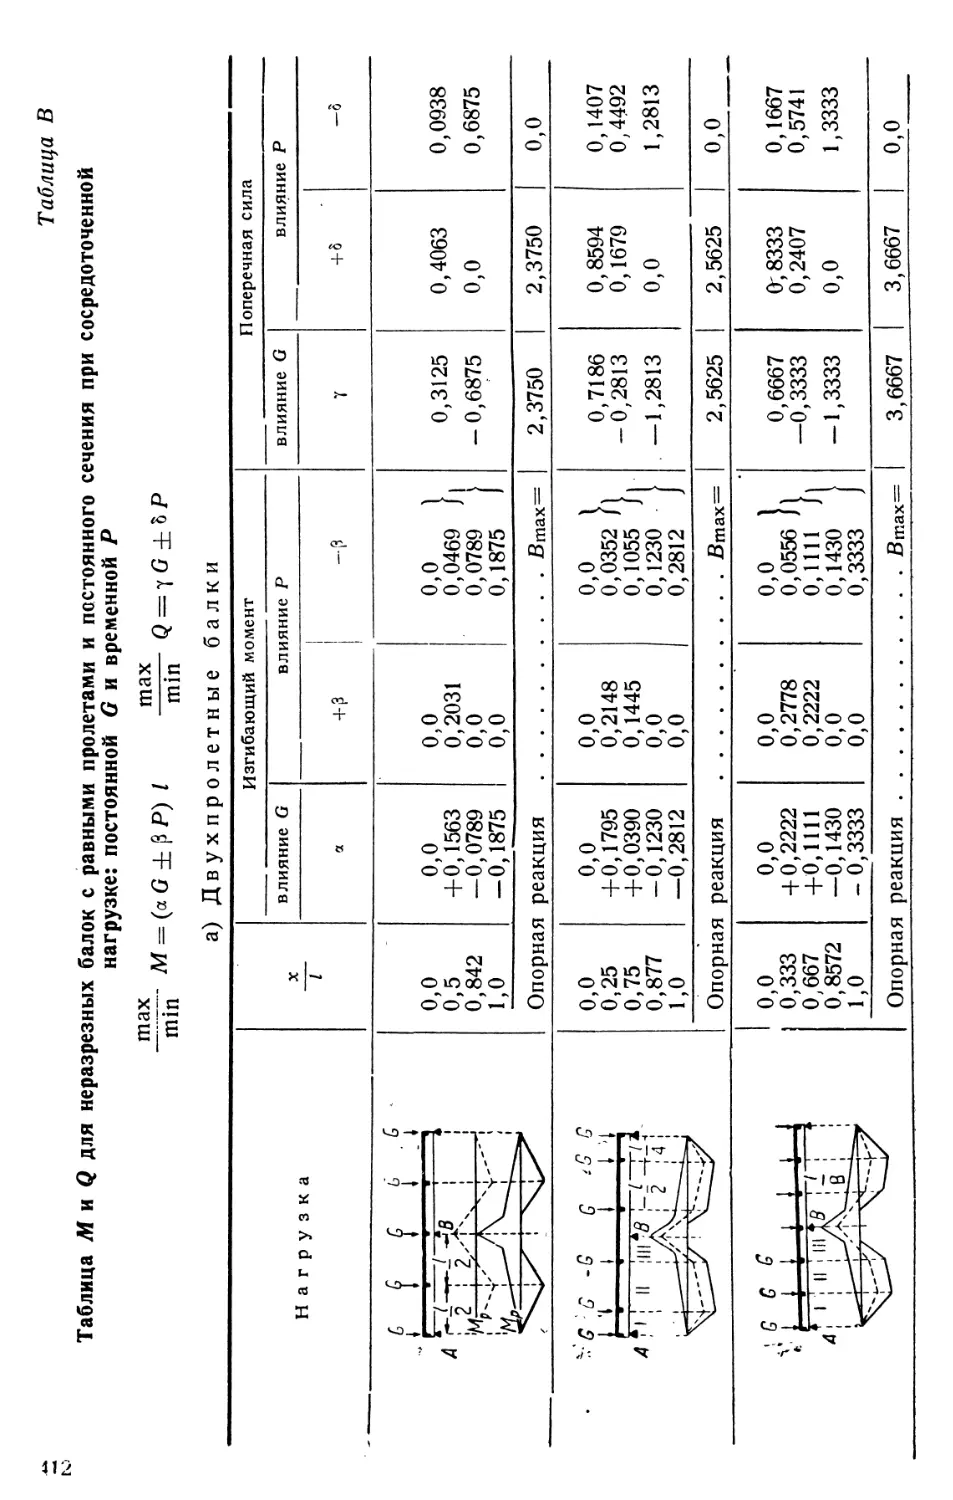 В.  Таблица М и Q для неразрезных балок с равными пролетами и постоянного сечения при сосредоточенной нагрузке: постоянной G и временной Р